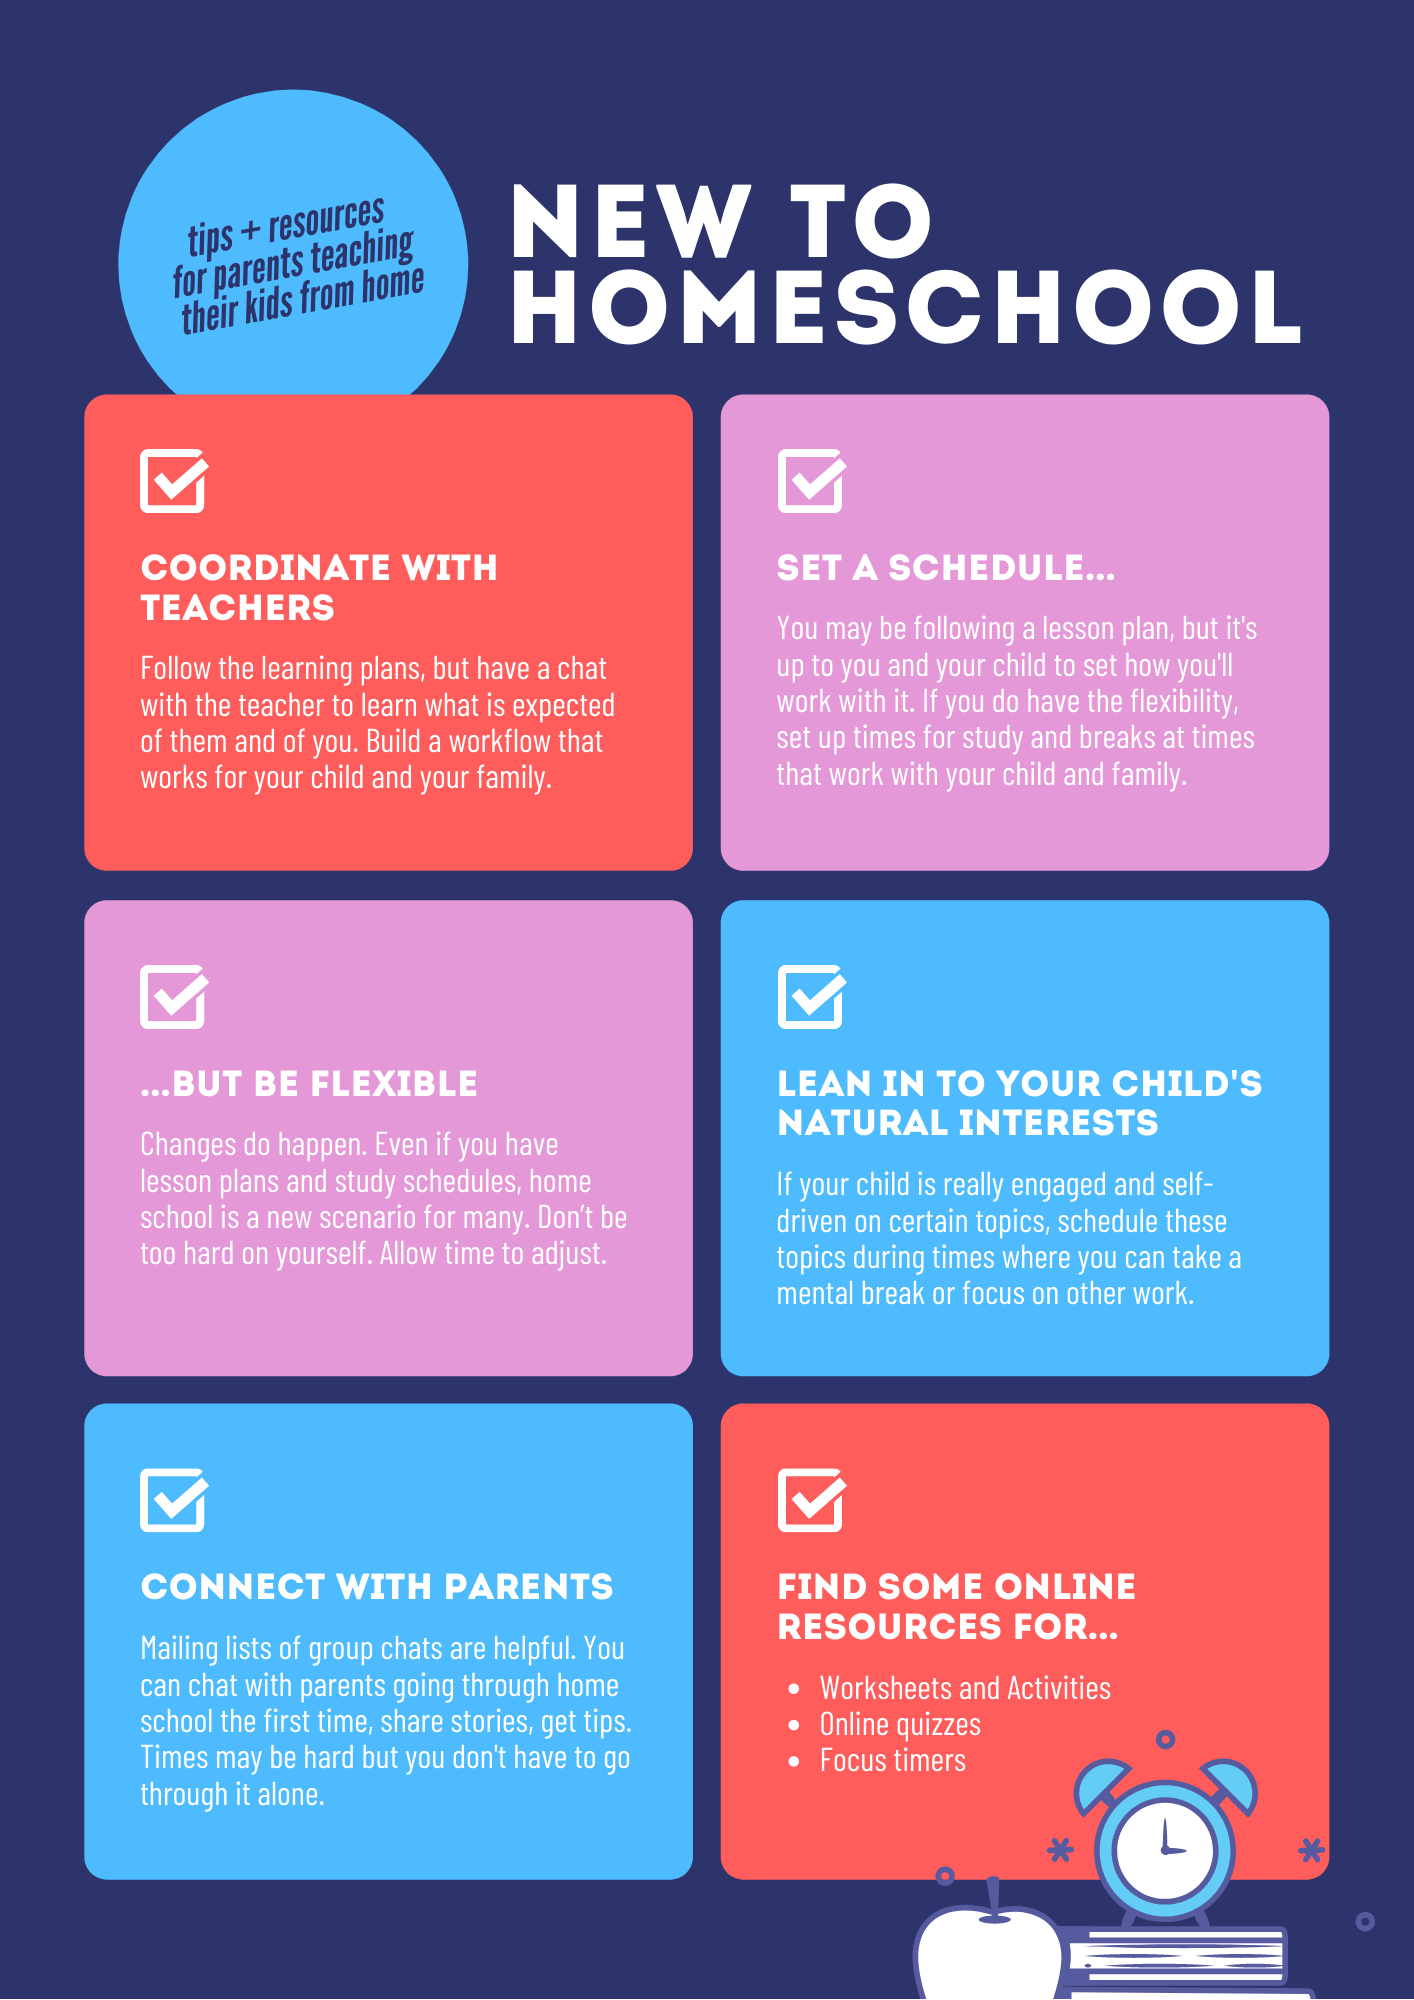 homeschooling for kids